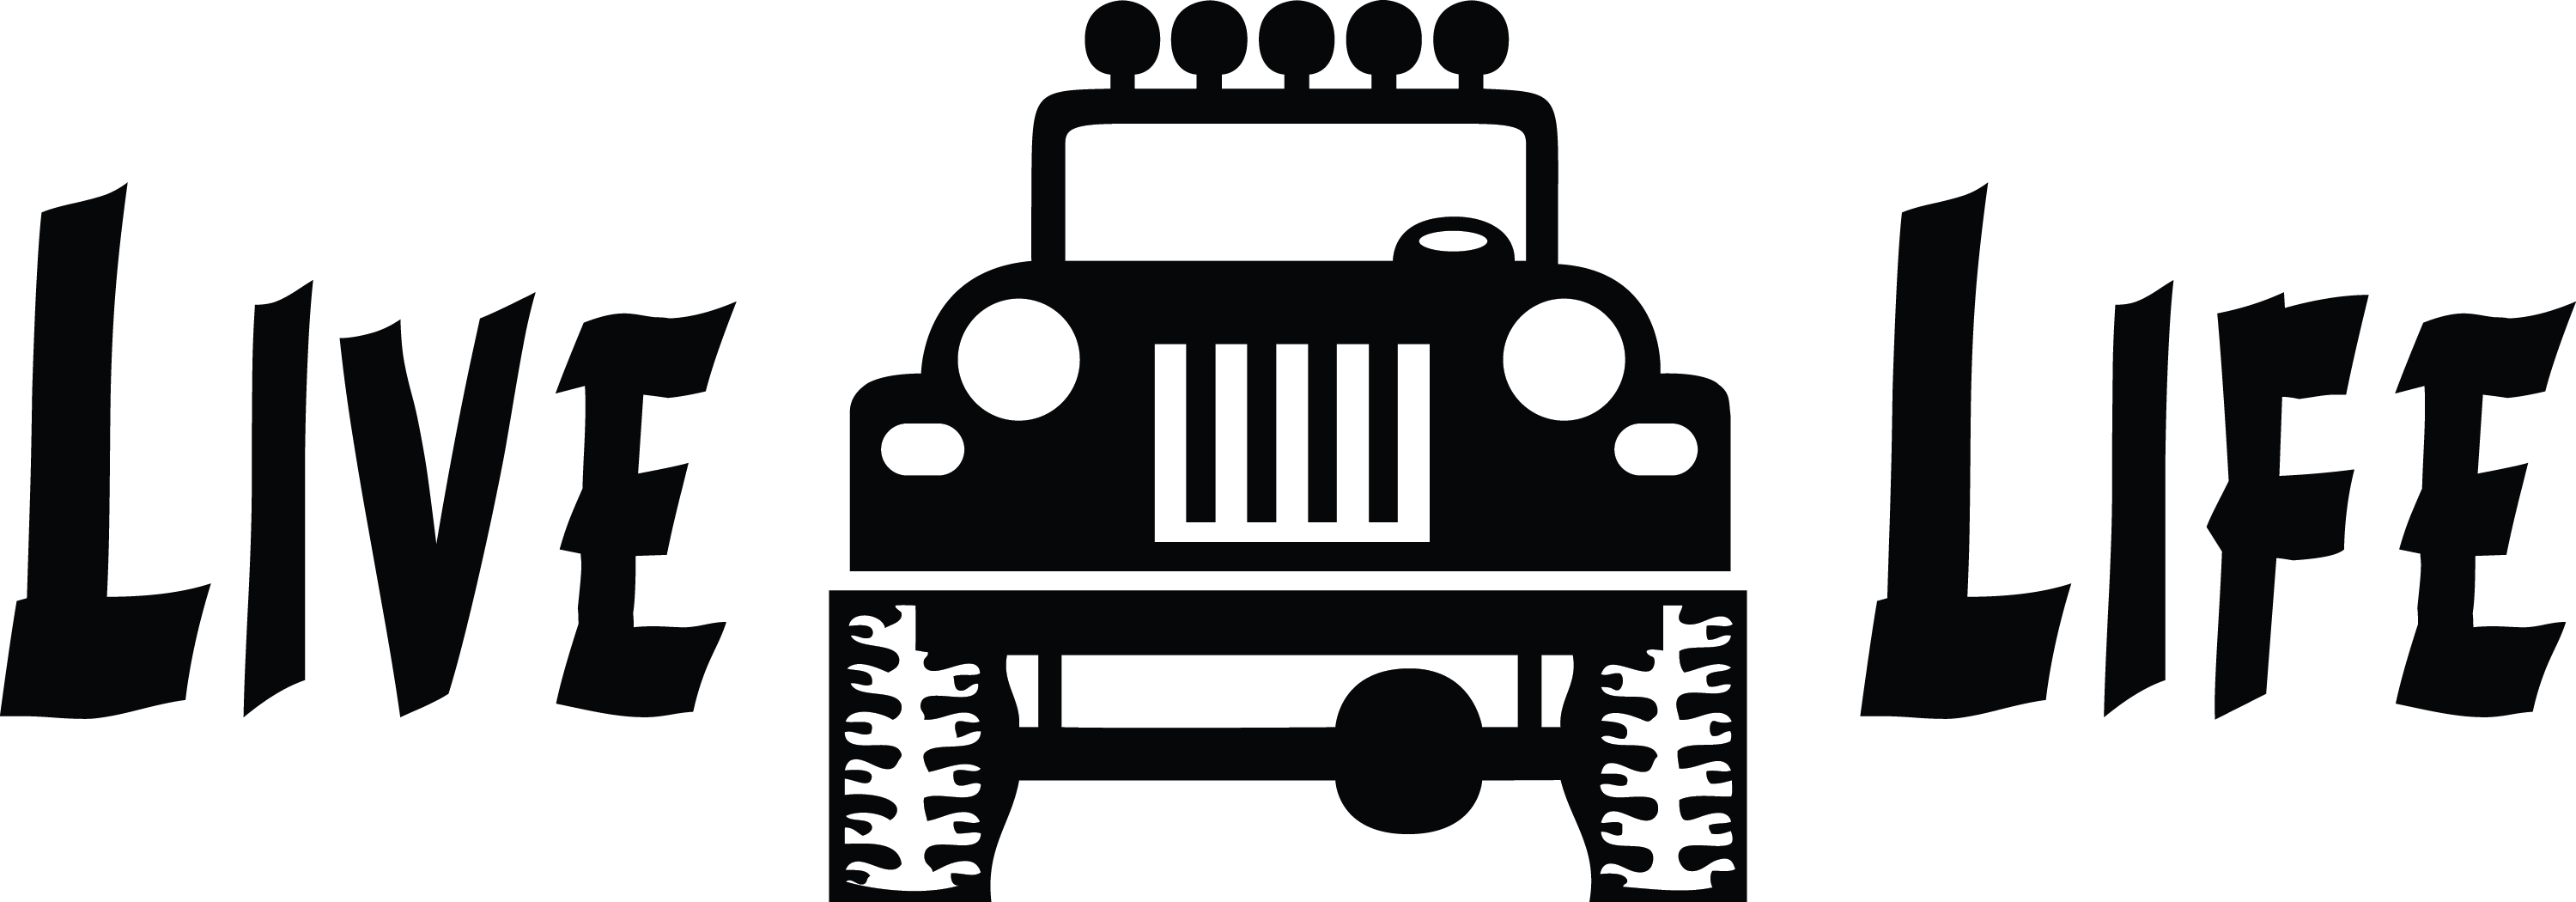 jeep clipart cj7